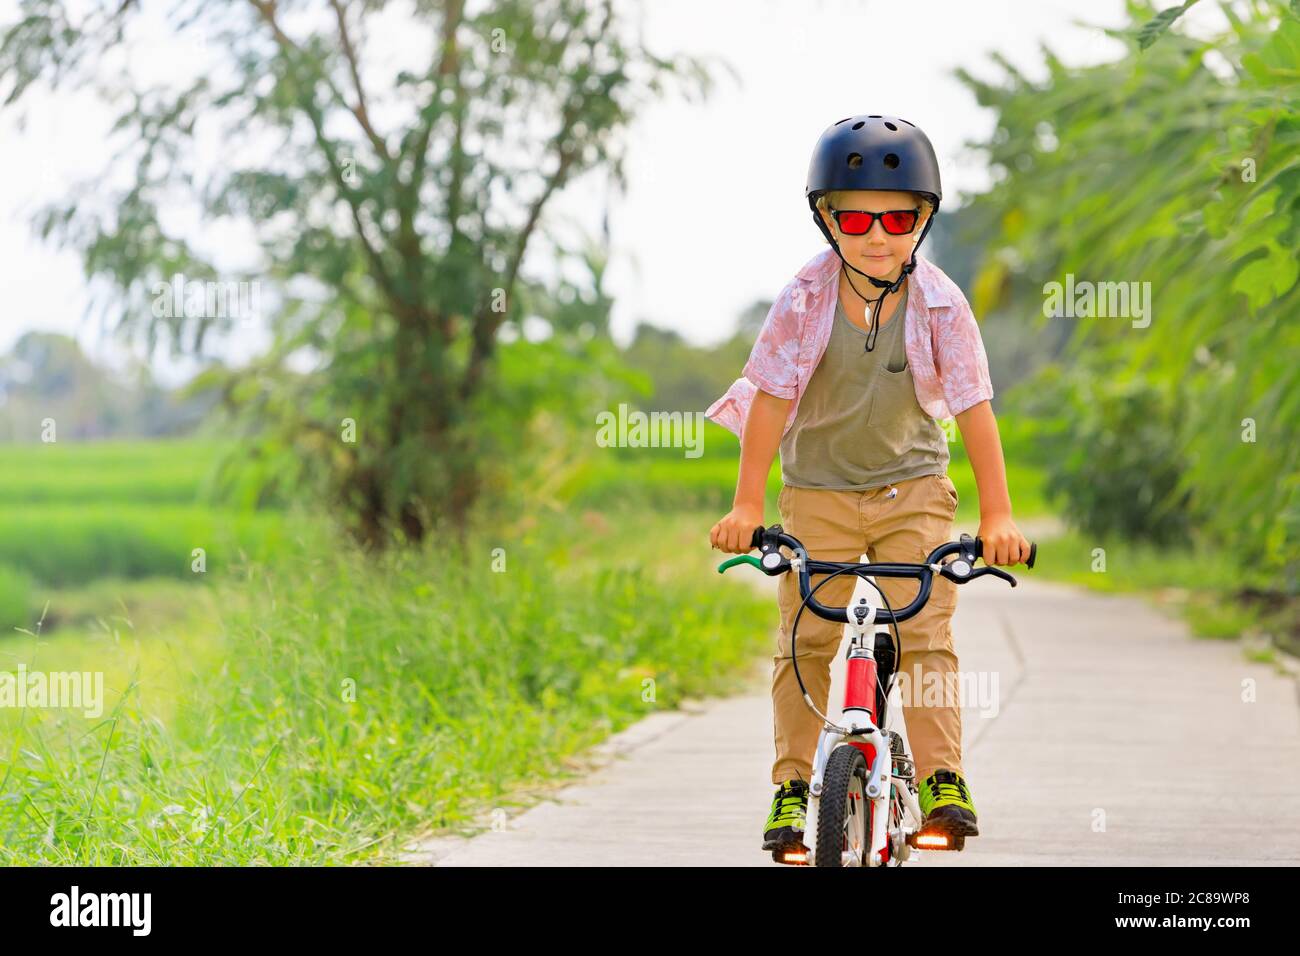 Randonnée à vélo. Jeune rider enfant dans un casque et des lunettes de soleil à vélo. Un enfant heureux s'amuse sur un sentier vide. Vie familiale active, sports Banque D'Images